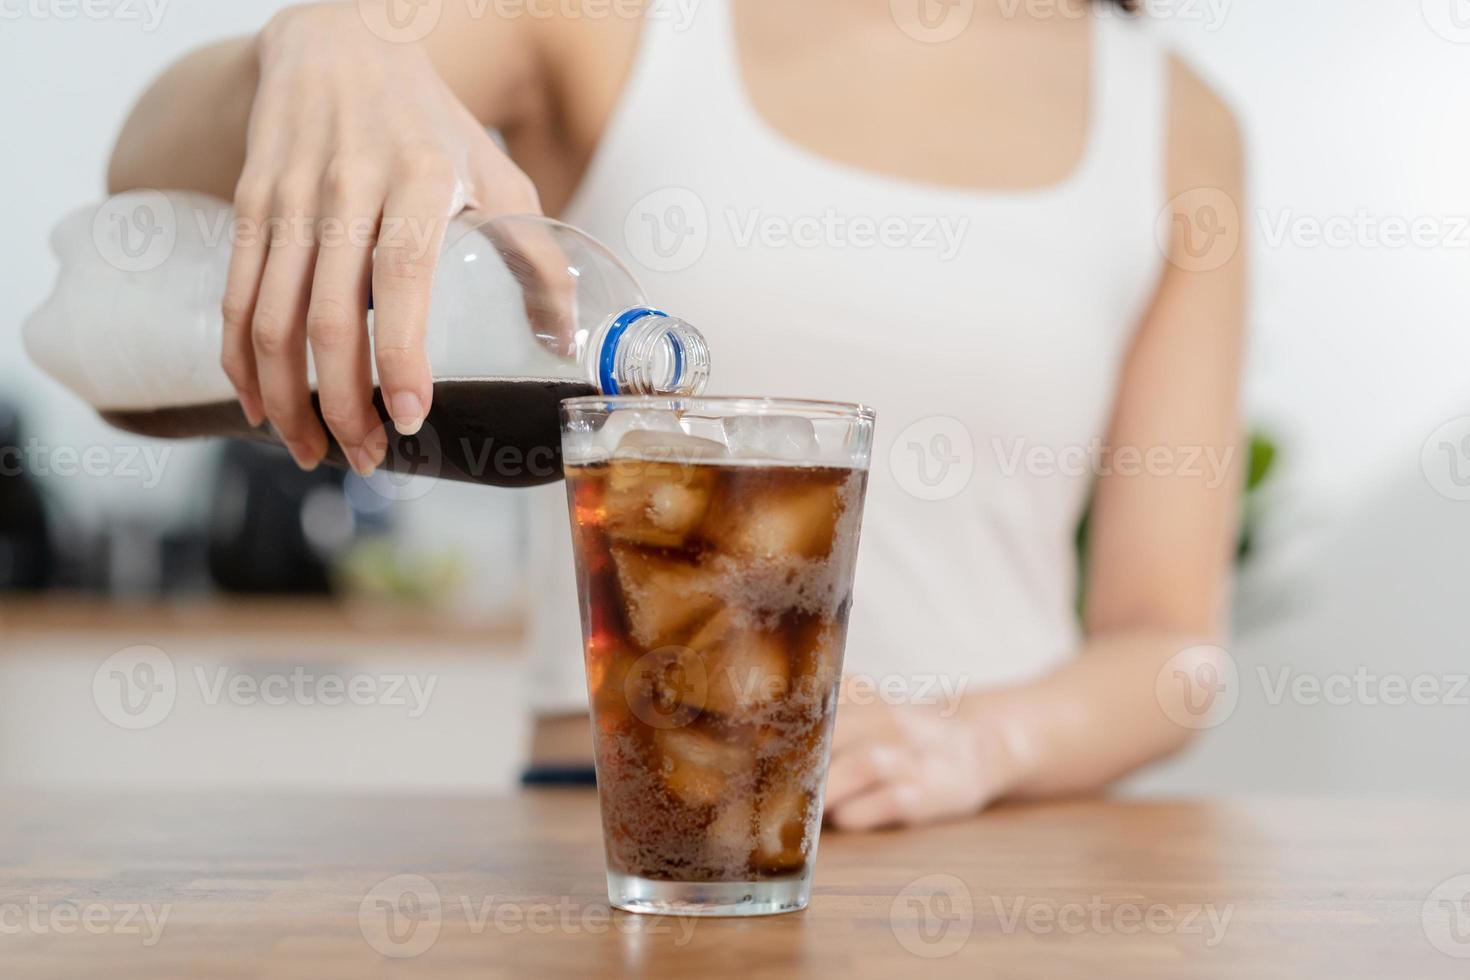 dorstig, Aziatisch jong vrouw, meisje vasthouden, gieten verkoudheid cola zacht drinken Frisdrank, sprankelend water met ijs zoet suiker van fles in glas in haar hand. Gezondheid zorg, gezond eetpatroon levensstijl concept. foto